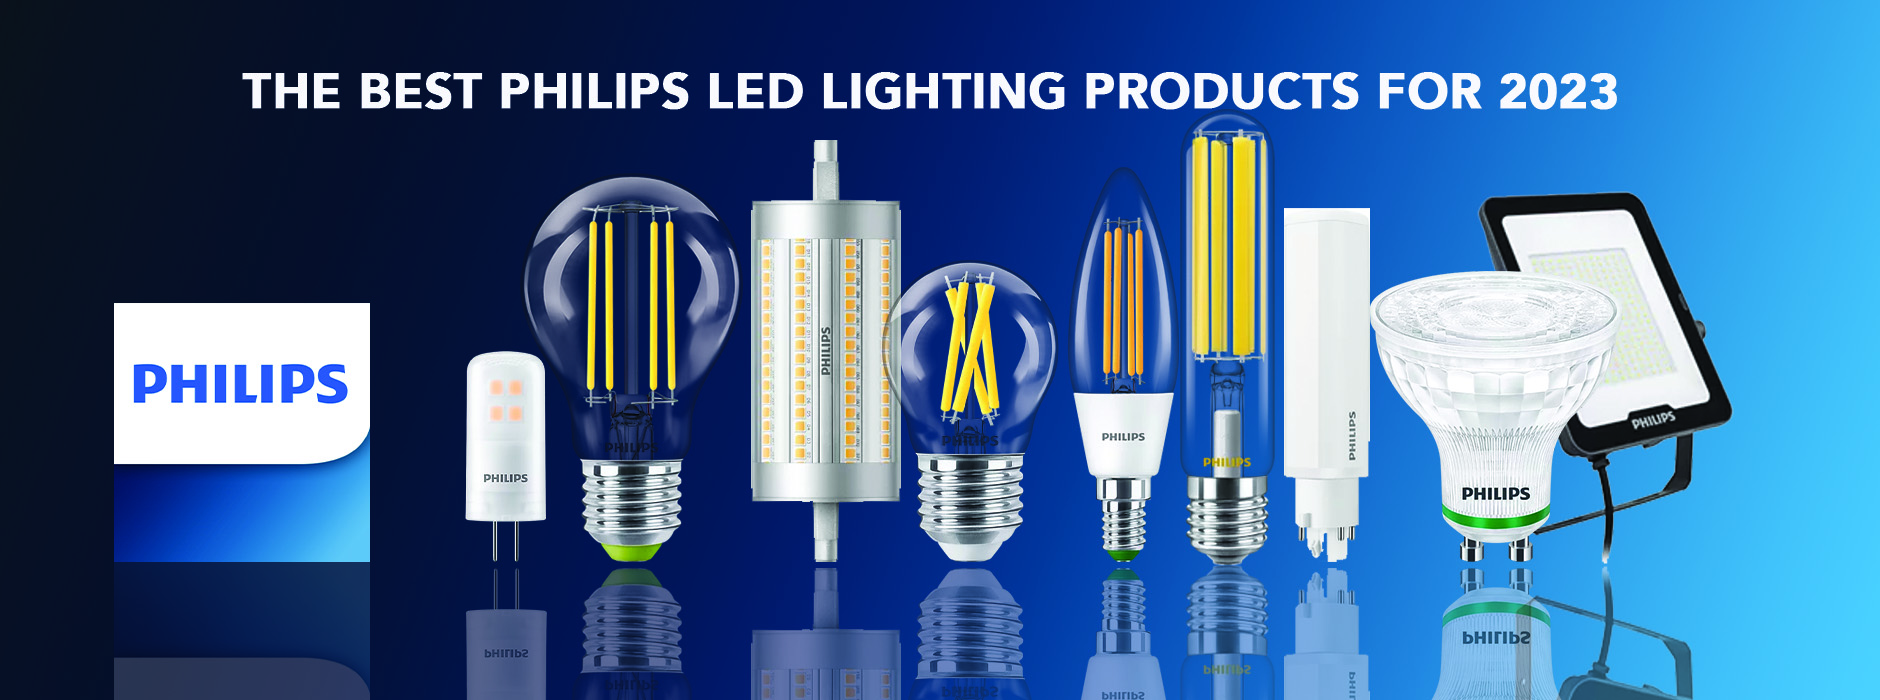 Luminaires - Philips Lighting HK